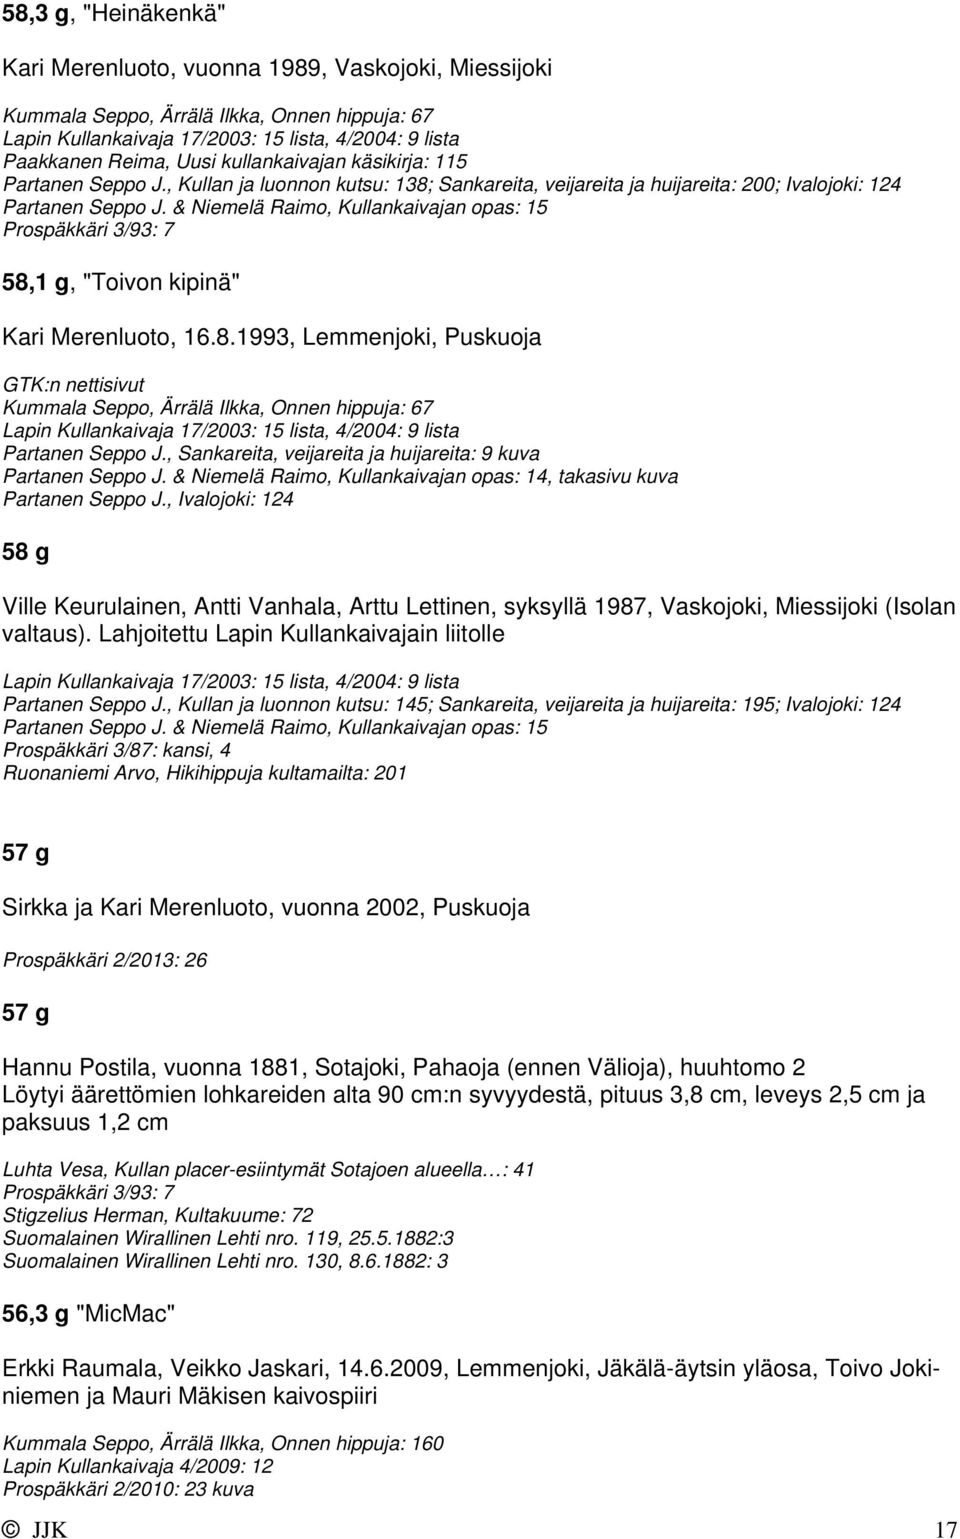 & Niemelä Raimo, Kullankaivajan opas: 15 58,1 g, "Toivon kipinä" Kari Merenluoto, 16.8.1993, Lemmenjoki, Puskuoja Kummala Seppo, Ärrälä Ilkka, Onnen hippuja: 67 Lapin Kullankaivaja 17/2003: 15 lista, 4/2004: 9 lista Partanen Seppo J.